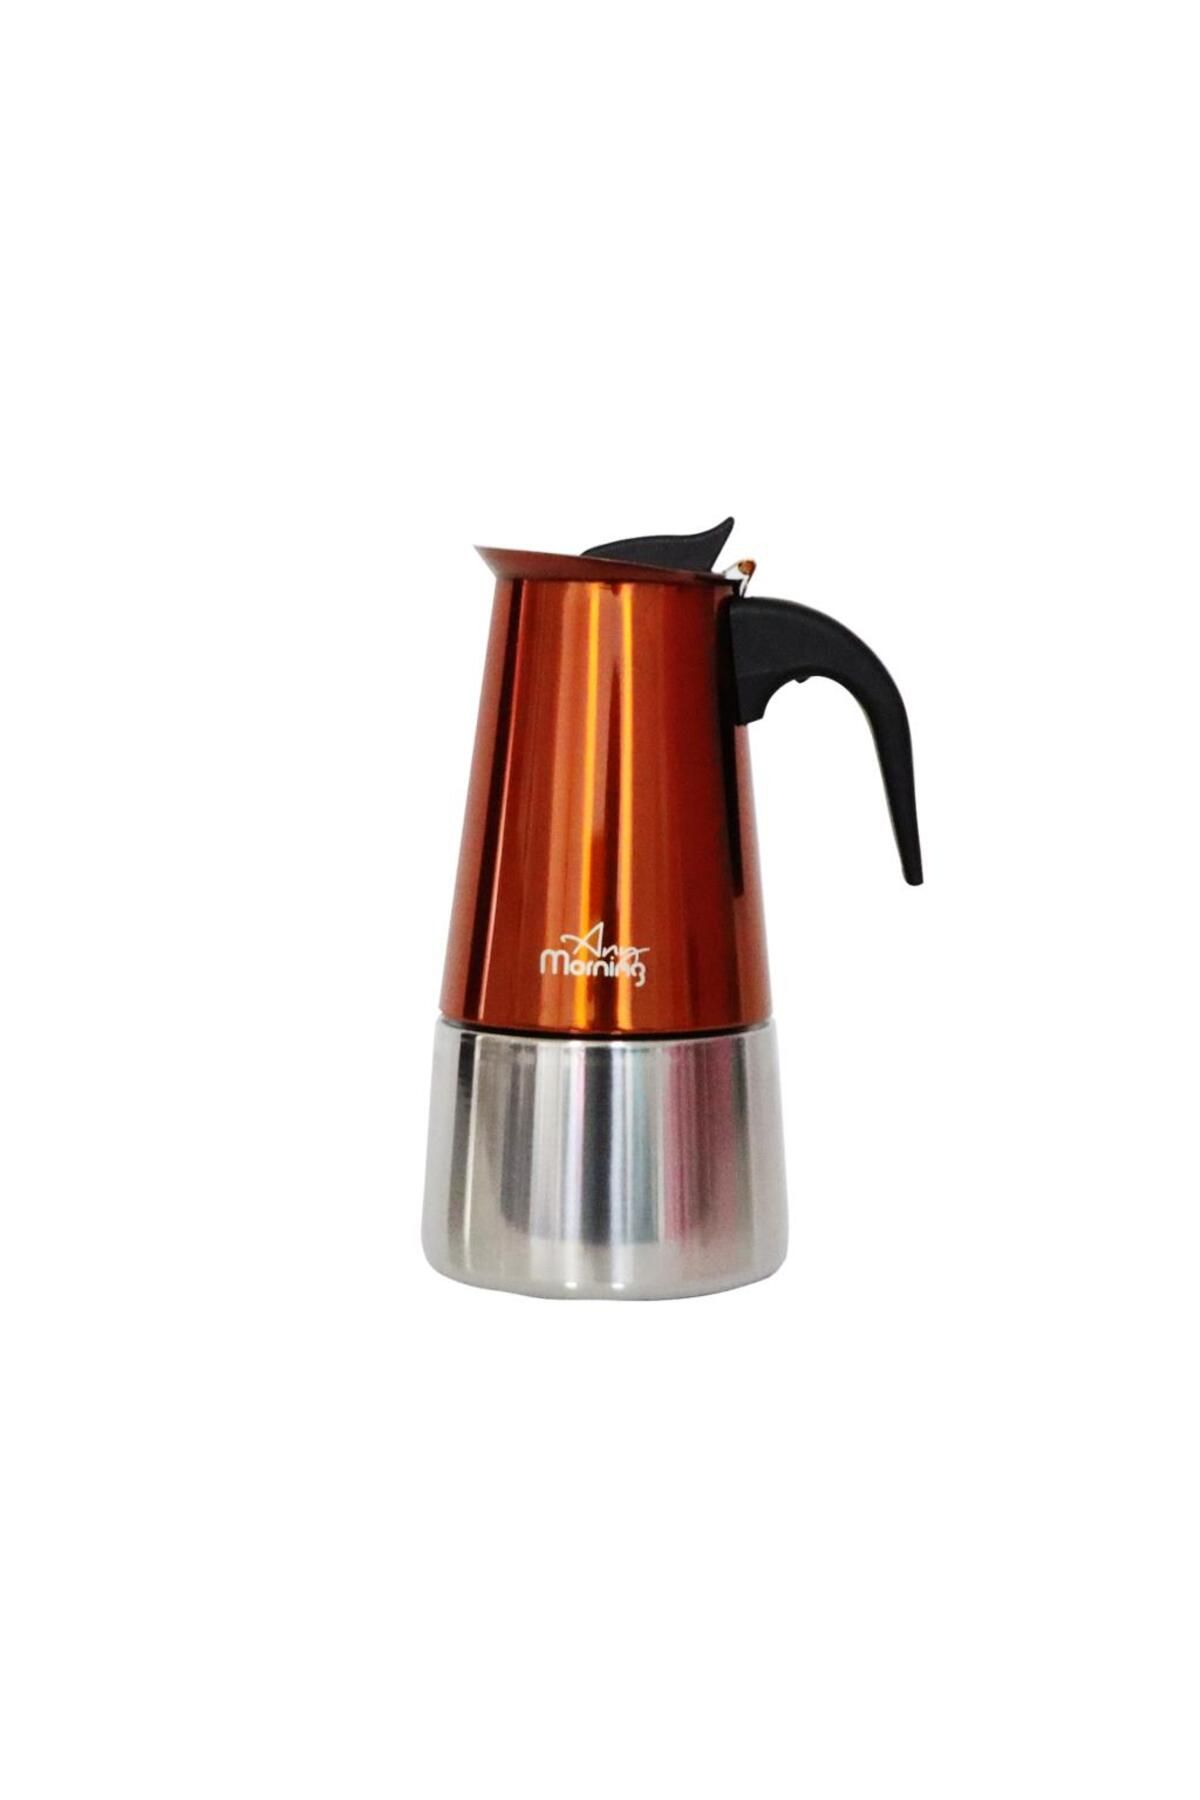 Any Morning Fe001-6 Espresso Kahve Makinesi Paslanmaz Çelik Indüksiyonlu Moka Pot 300 ml Bakır